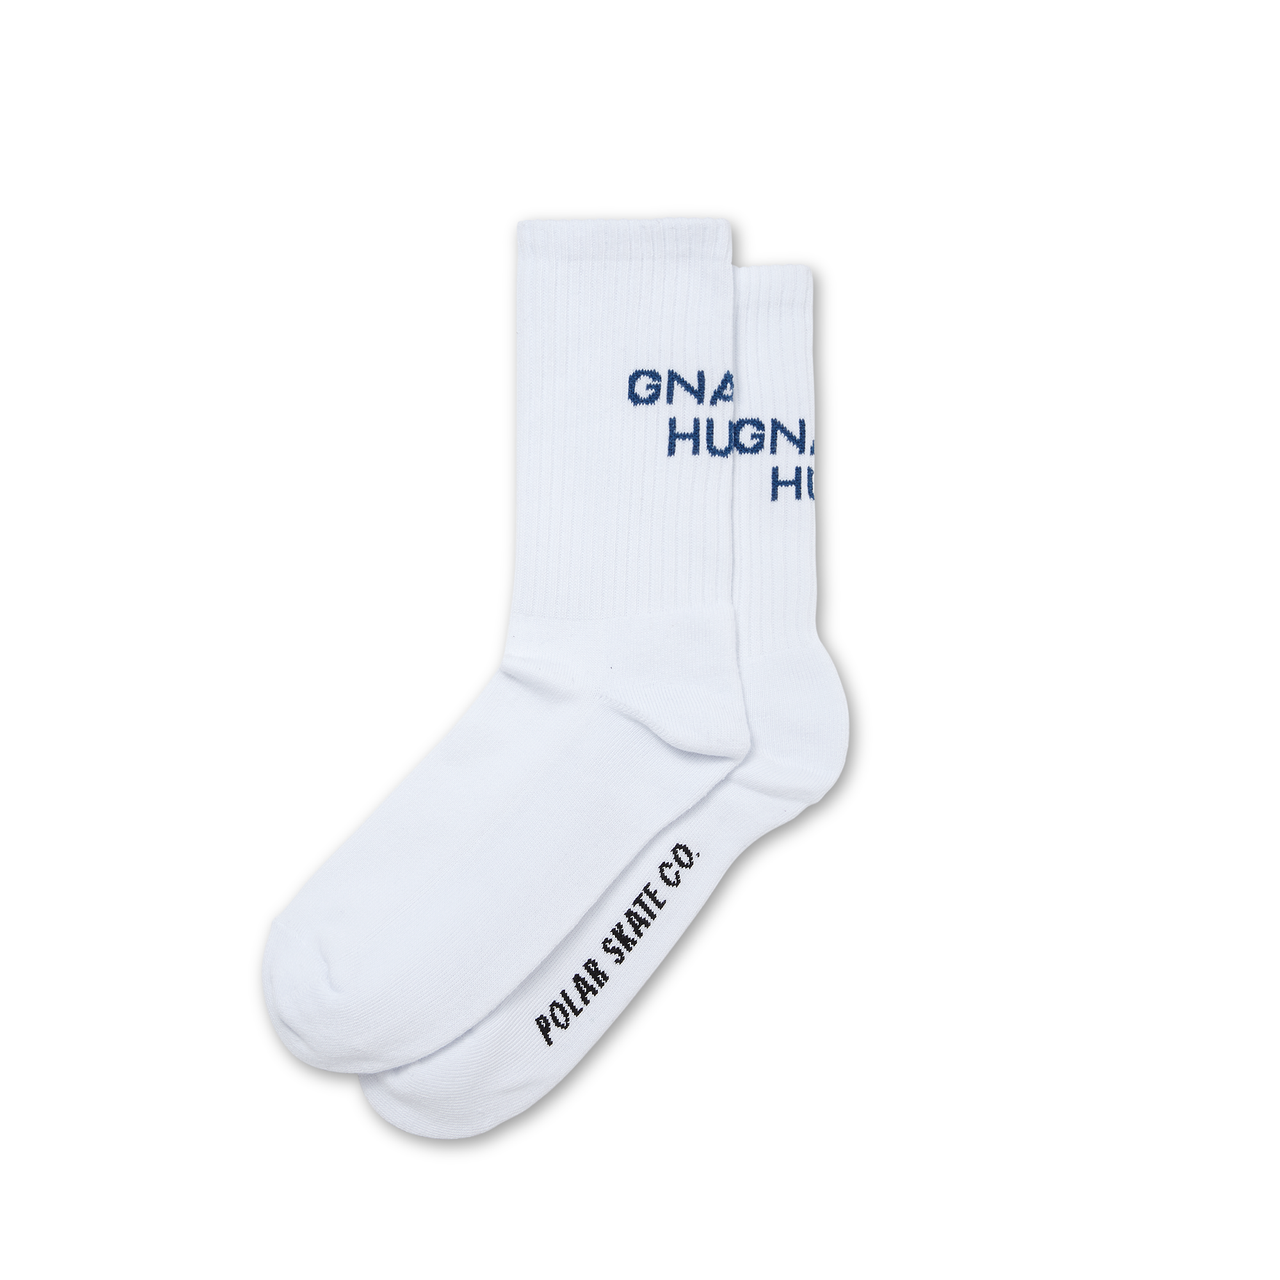 Polar Gnarly Huh Socks (White/Navy)